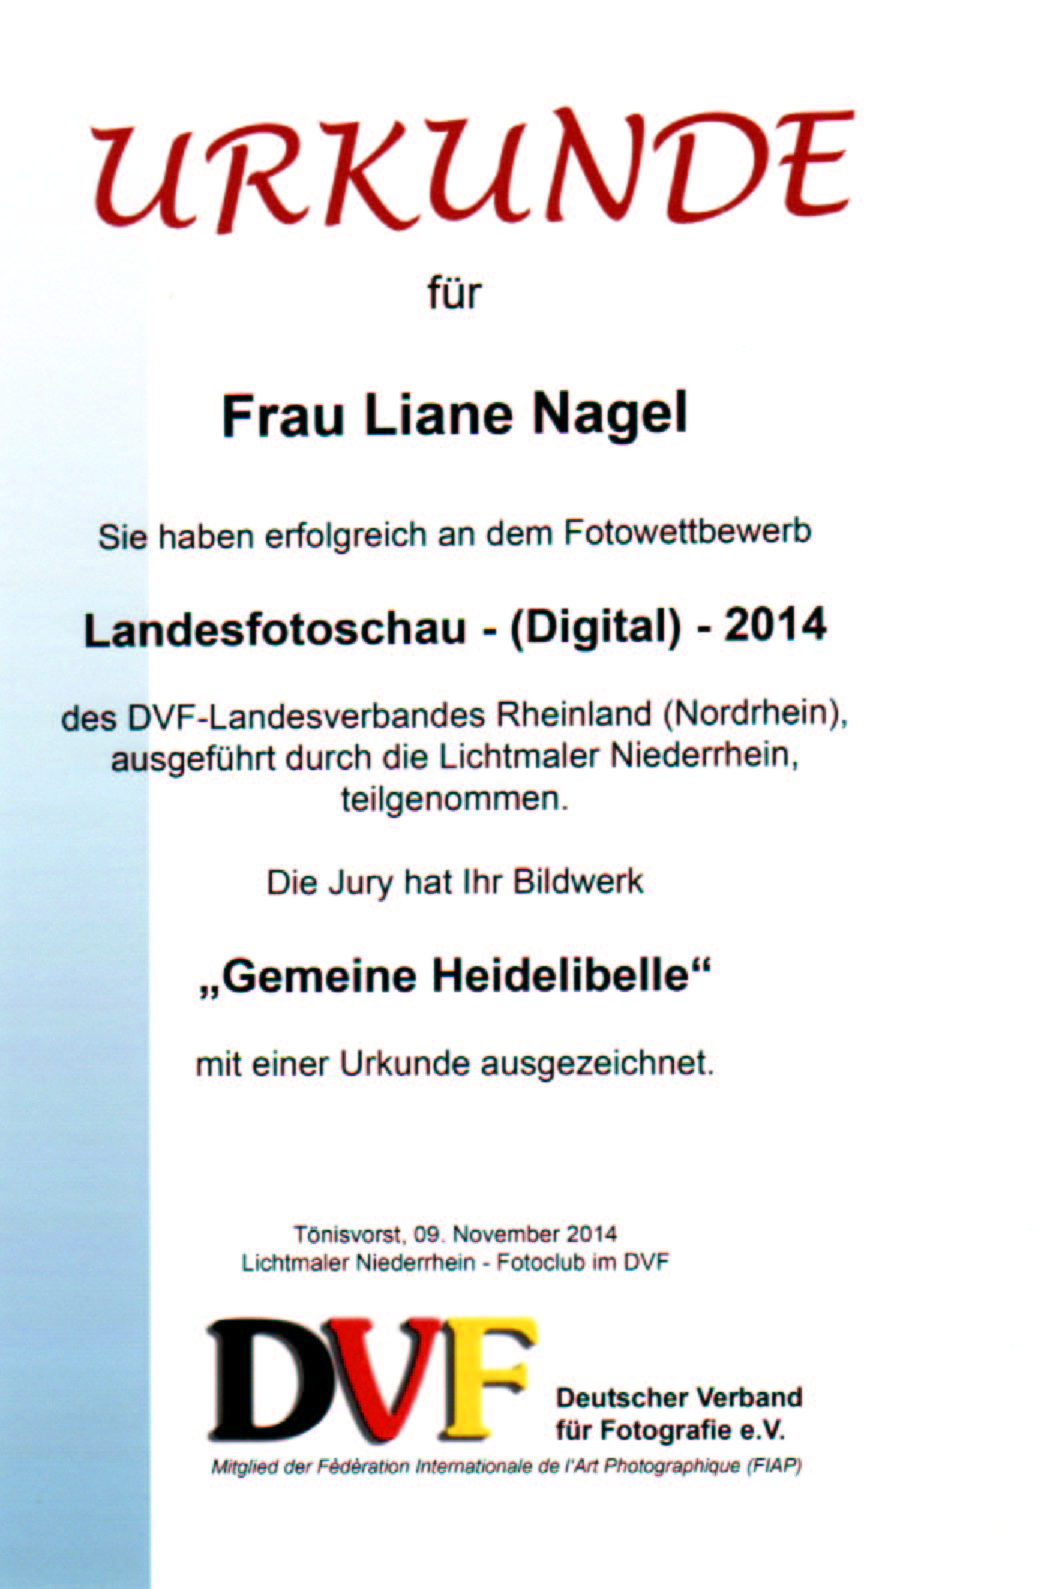 Urkunde beim DVF-Wettbewerb "Landesfotoschau (Digital) 2014", Liane